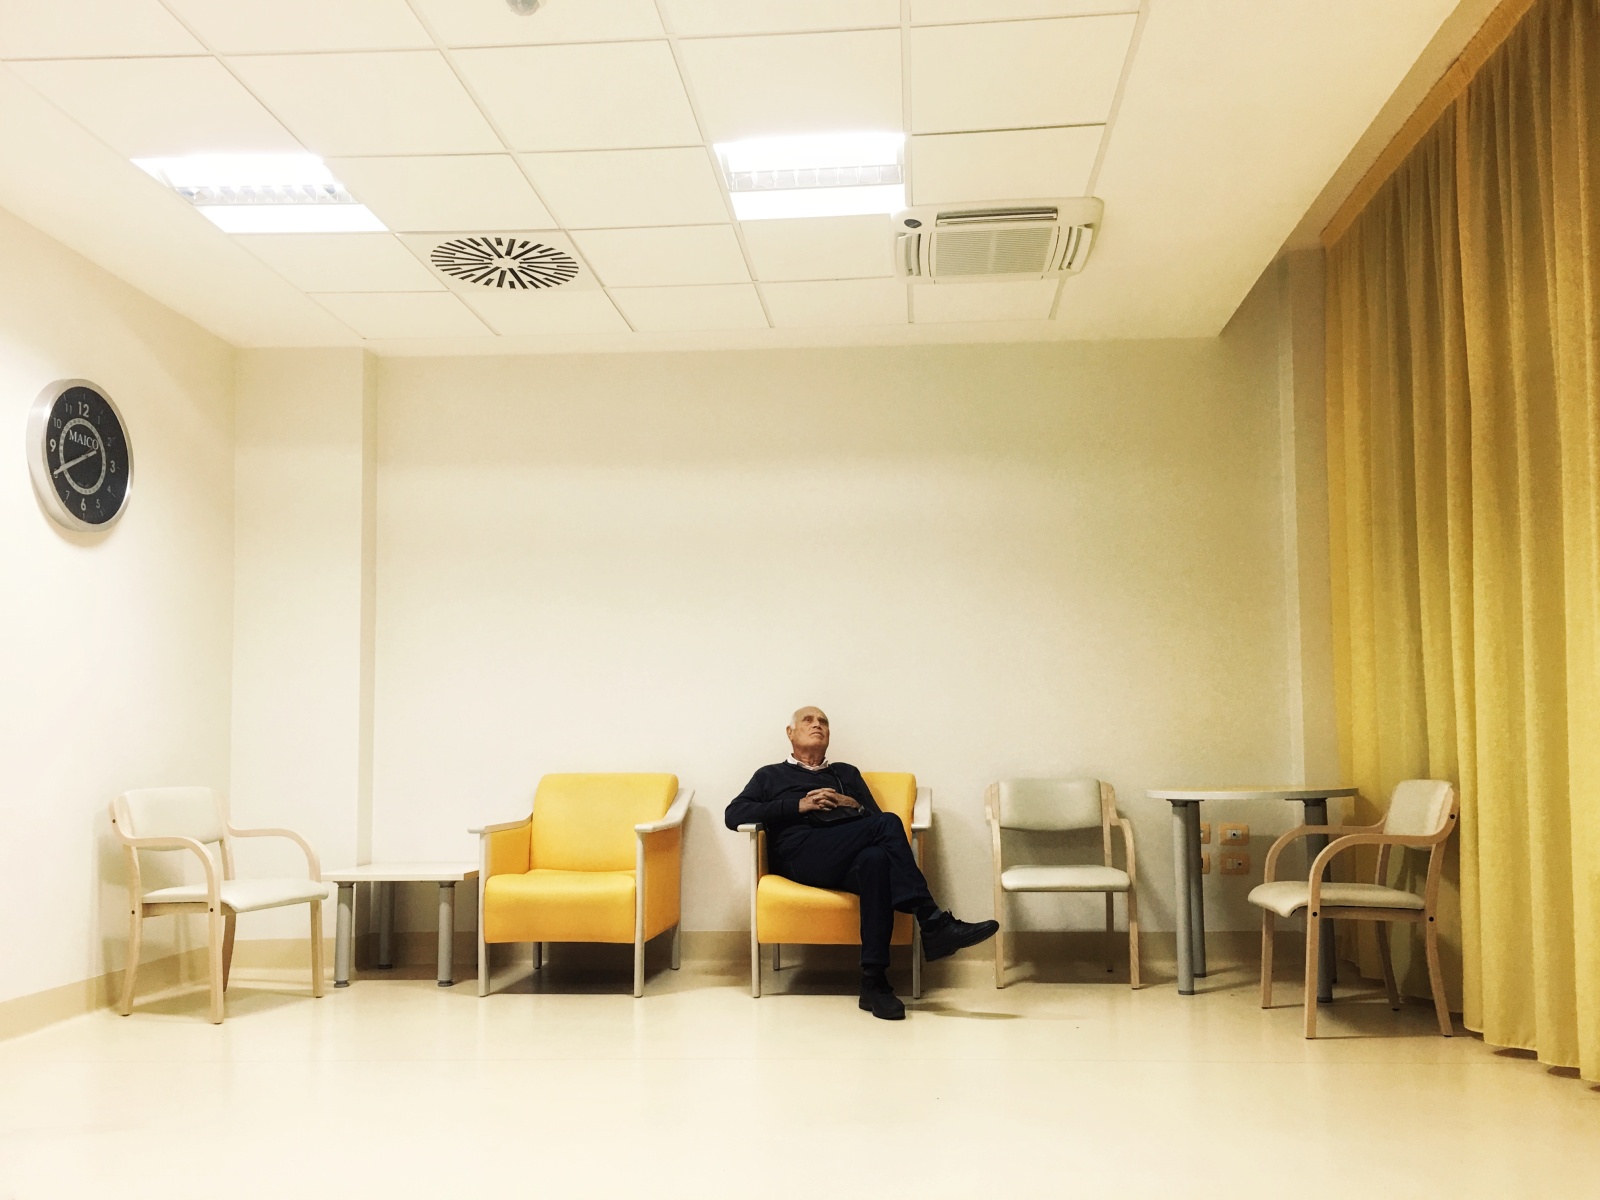 Bari, 2017.
Un parente riposa su una delle poltrone della sala di attesa del reparto, durante una notte di assistenza al degente. 